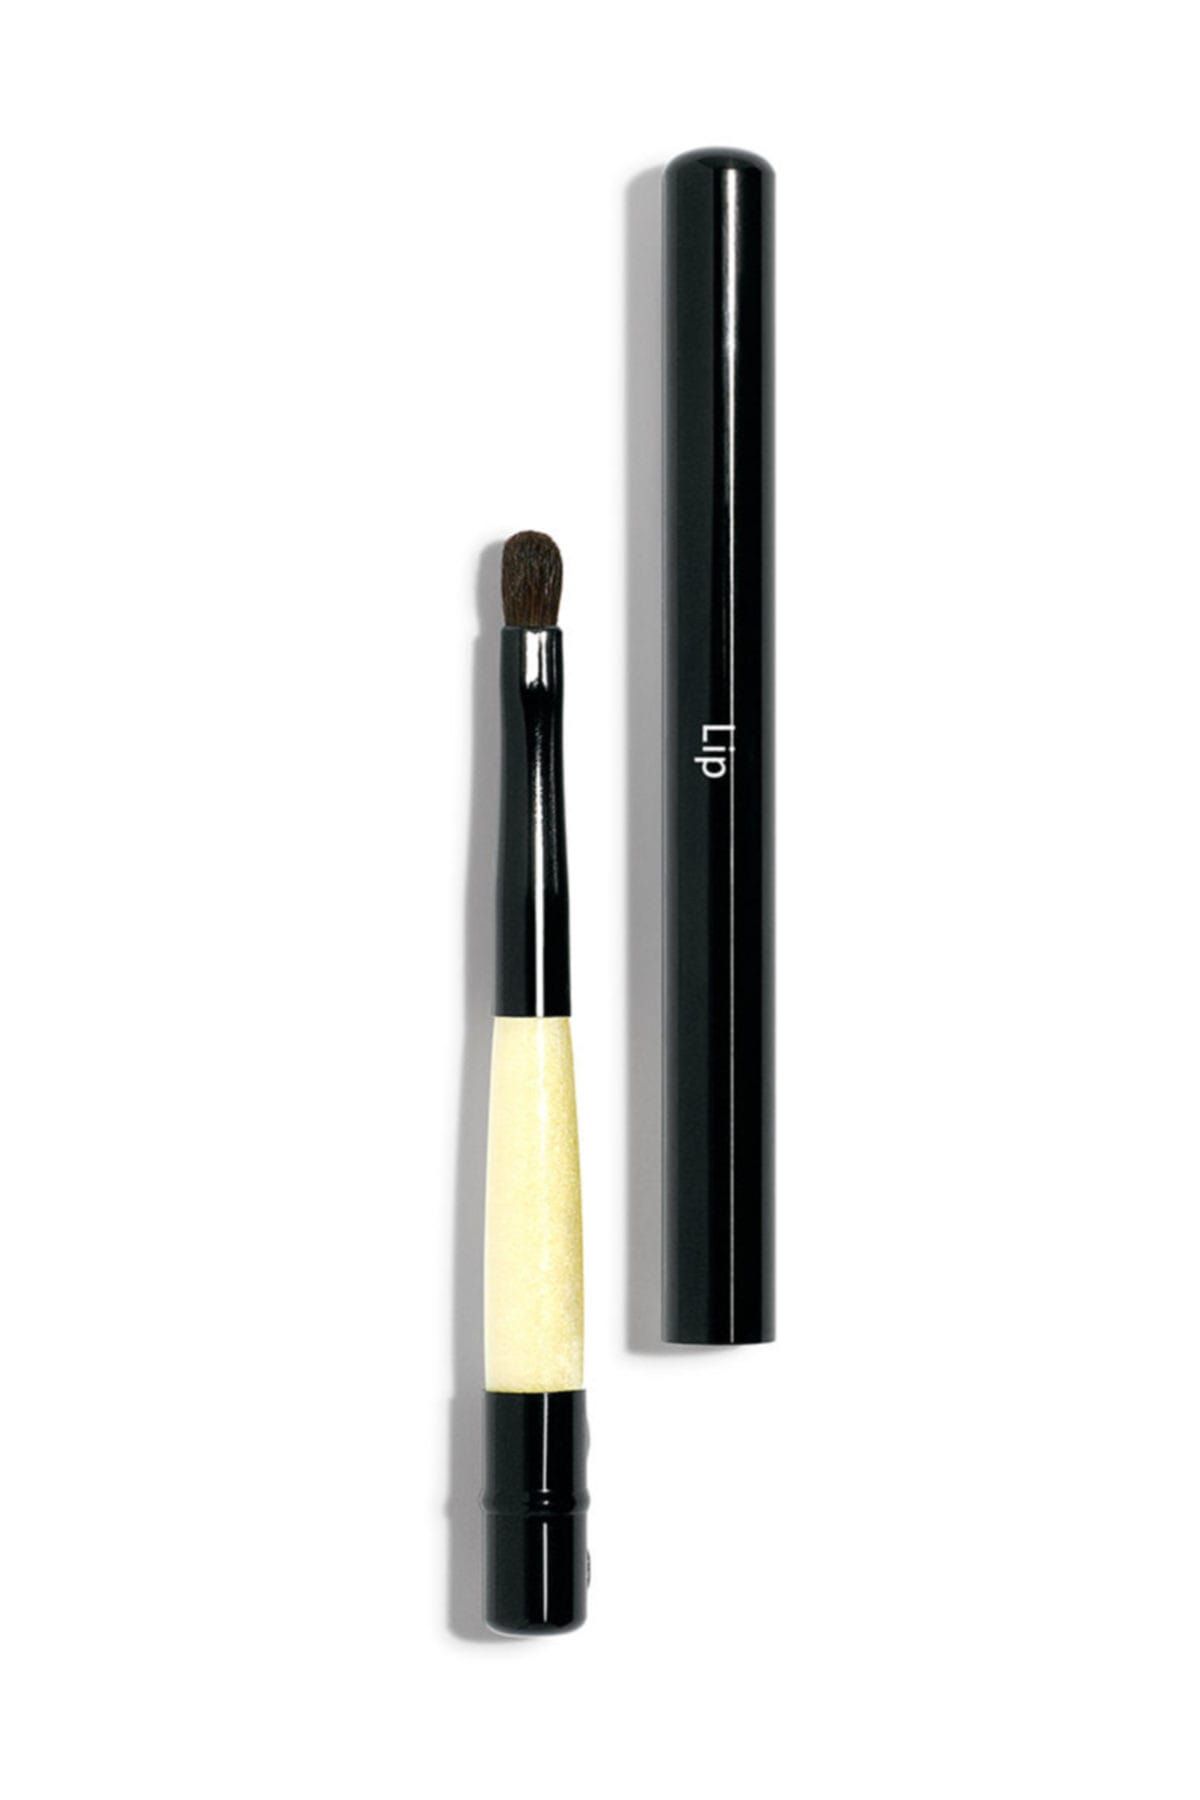 Bobbi Brown Retractable Lip Brush / Dudak Fırçası 8.57 Cm 716170021478 7739